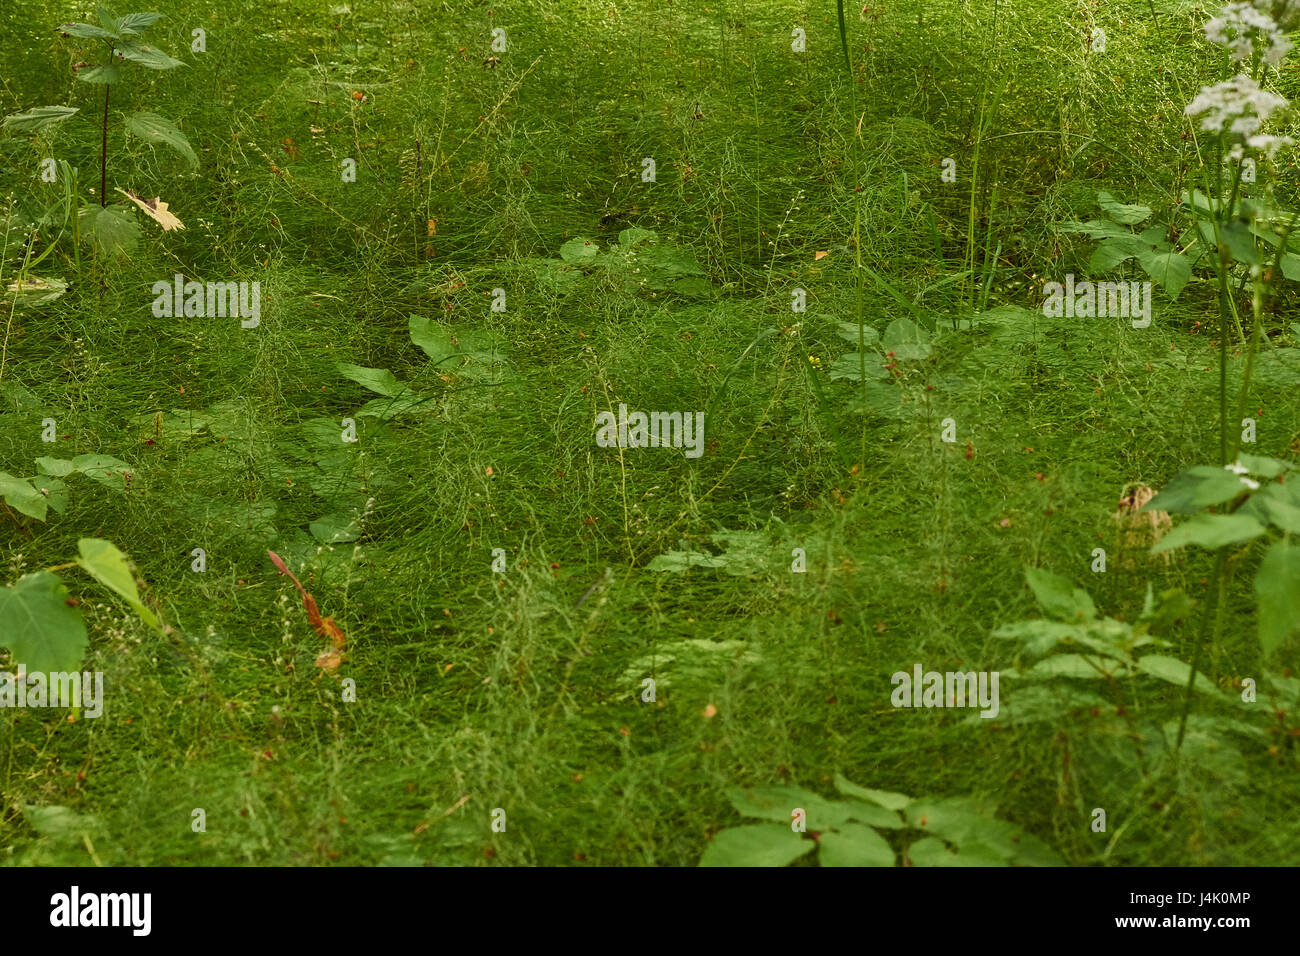 Il tappeto verde di erba./nella foresta sotto gli alberi di ulivo molto densamente cresce erba. Tutta la terra è nascosta al di sotto del manto erboso e diventa molto bello Foto Stock